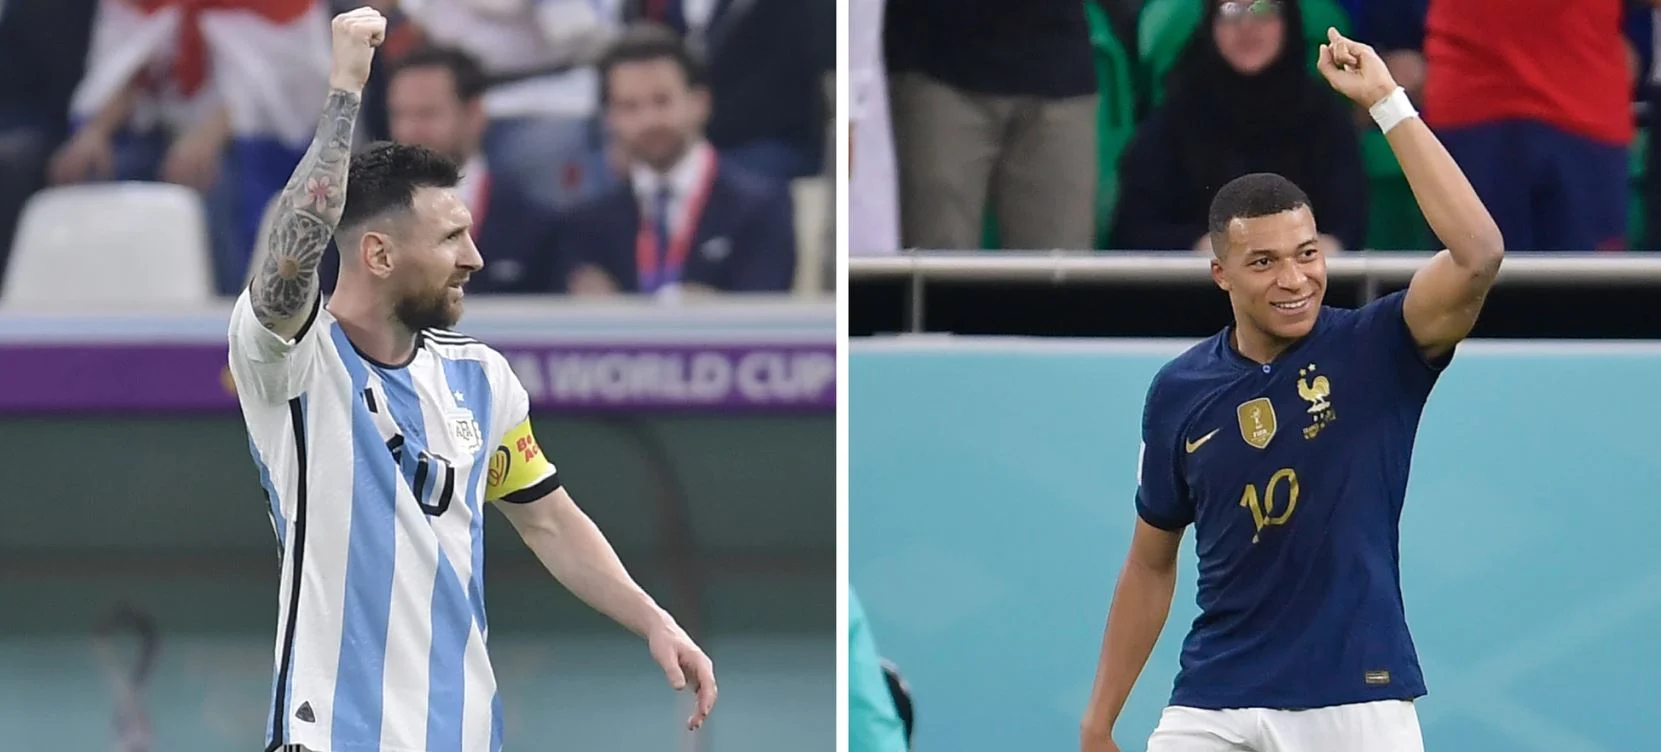 Αργεντίνος οπαδός είχε προβλέψει τον σημερινό τελικό του Μουντιάλ το 2015